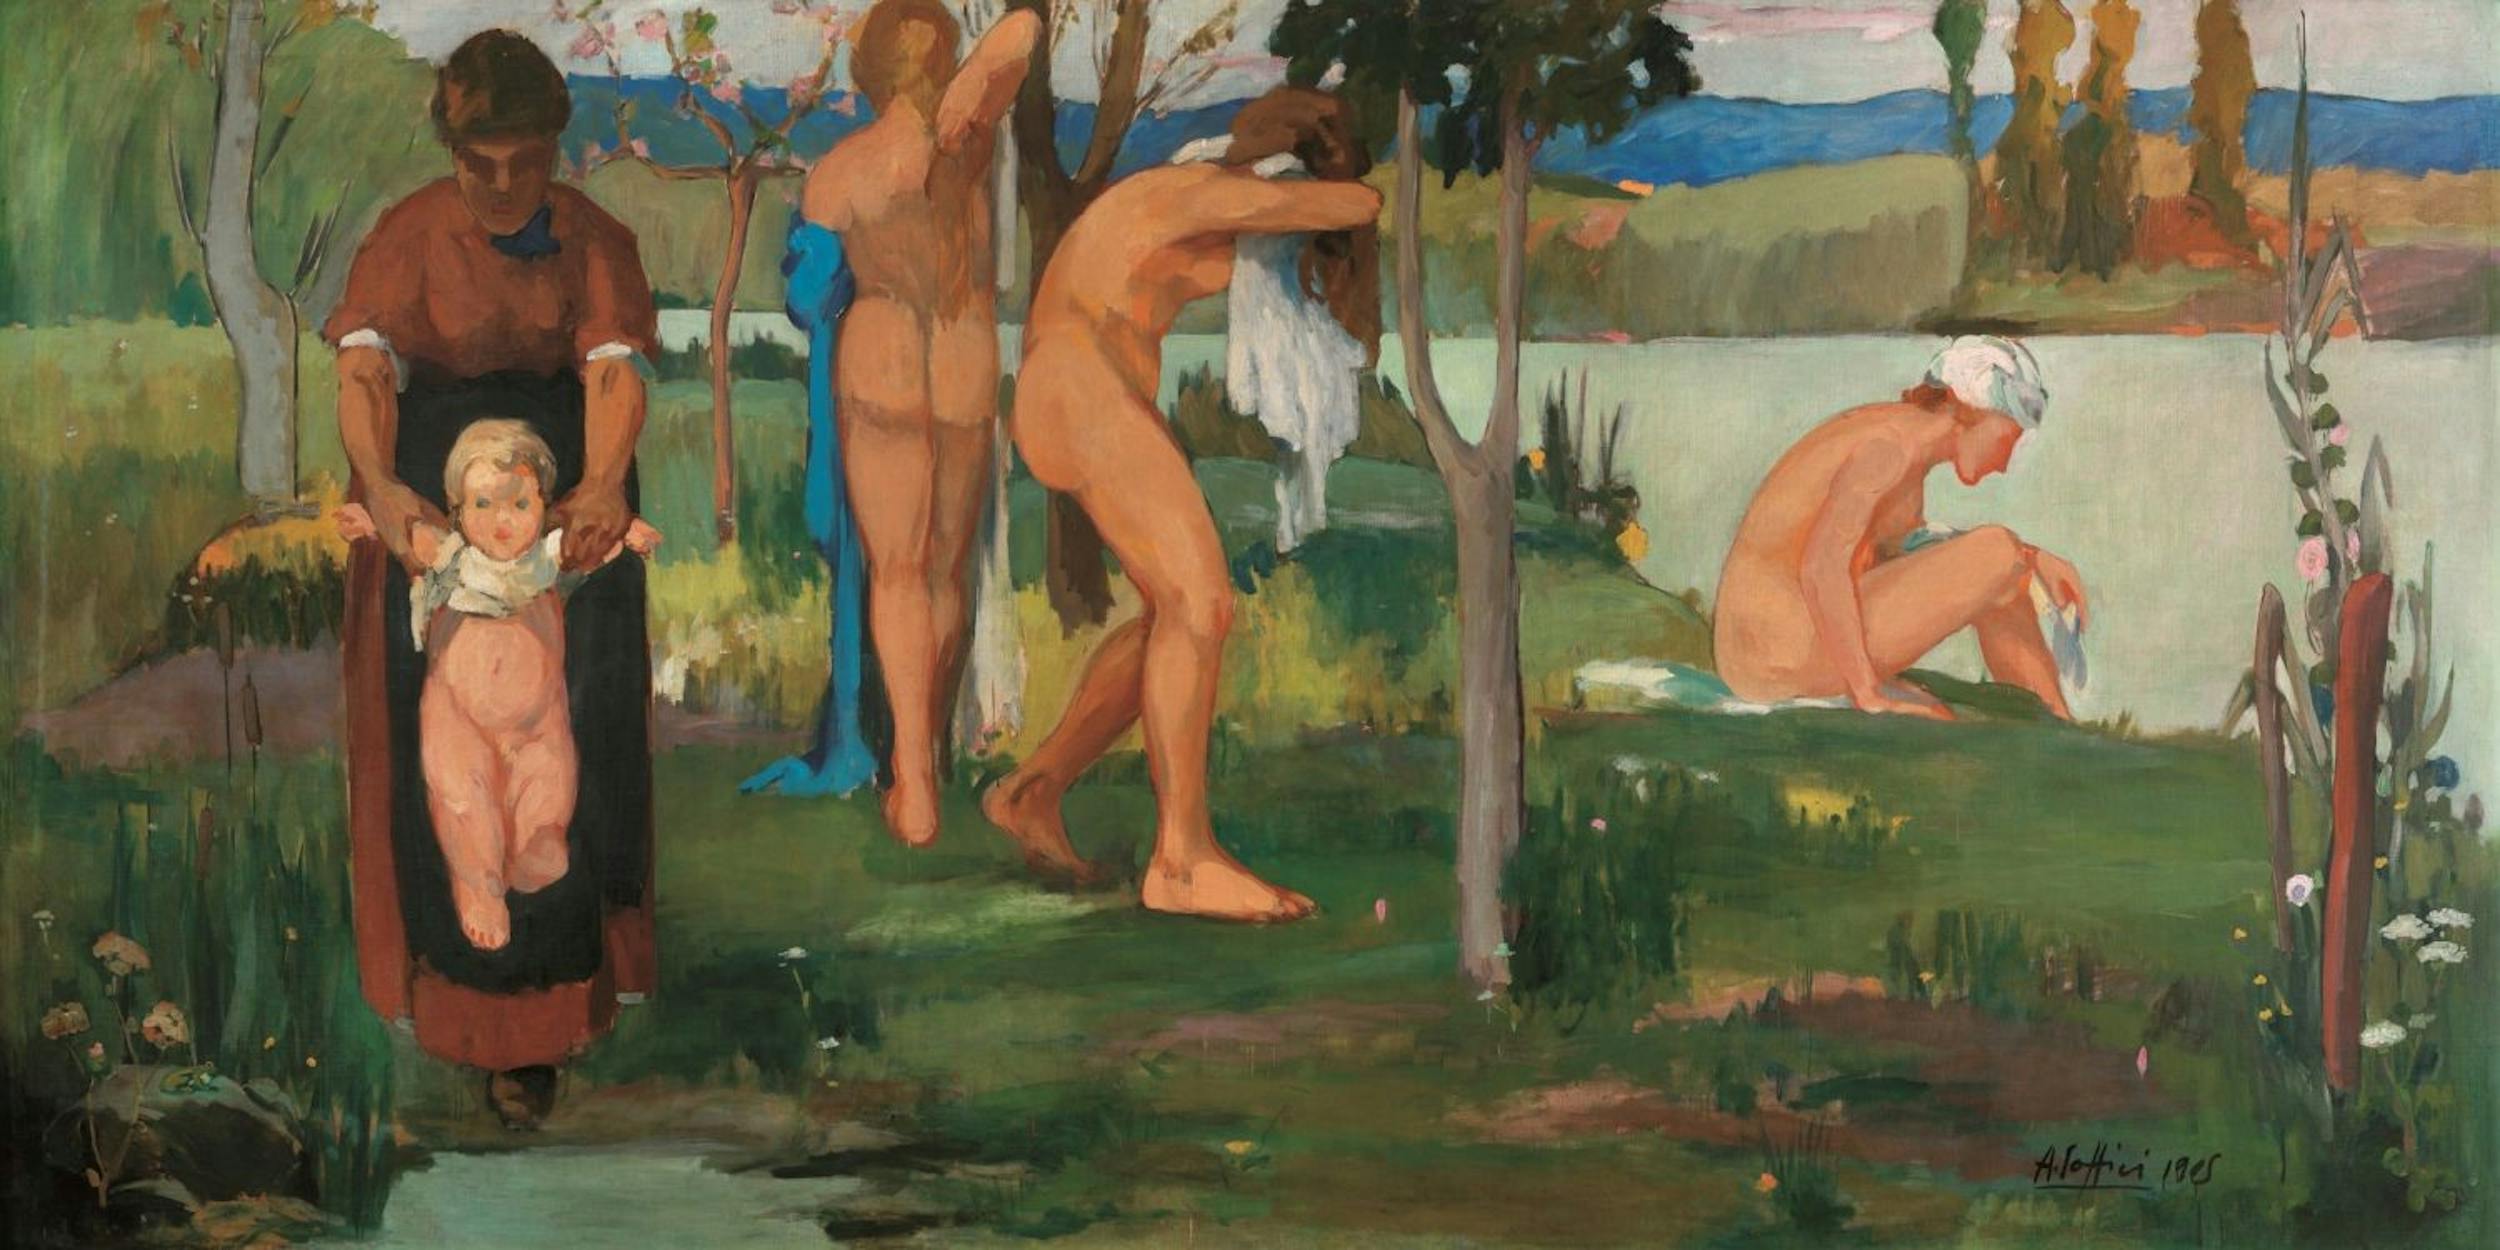 Ardengo Soffici, Il Bagno, olio su tela, 1905, Hotel delle Terme, Roncegno, collezione privata